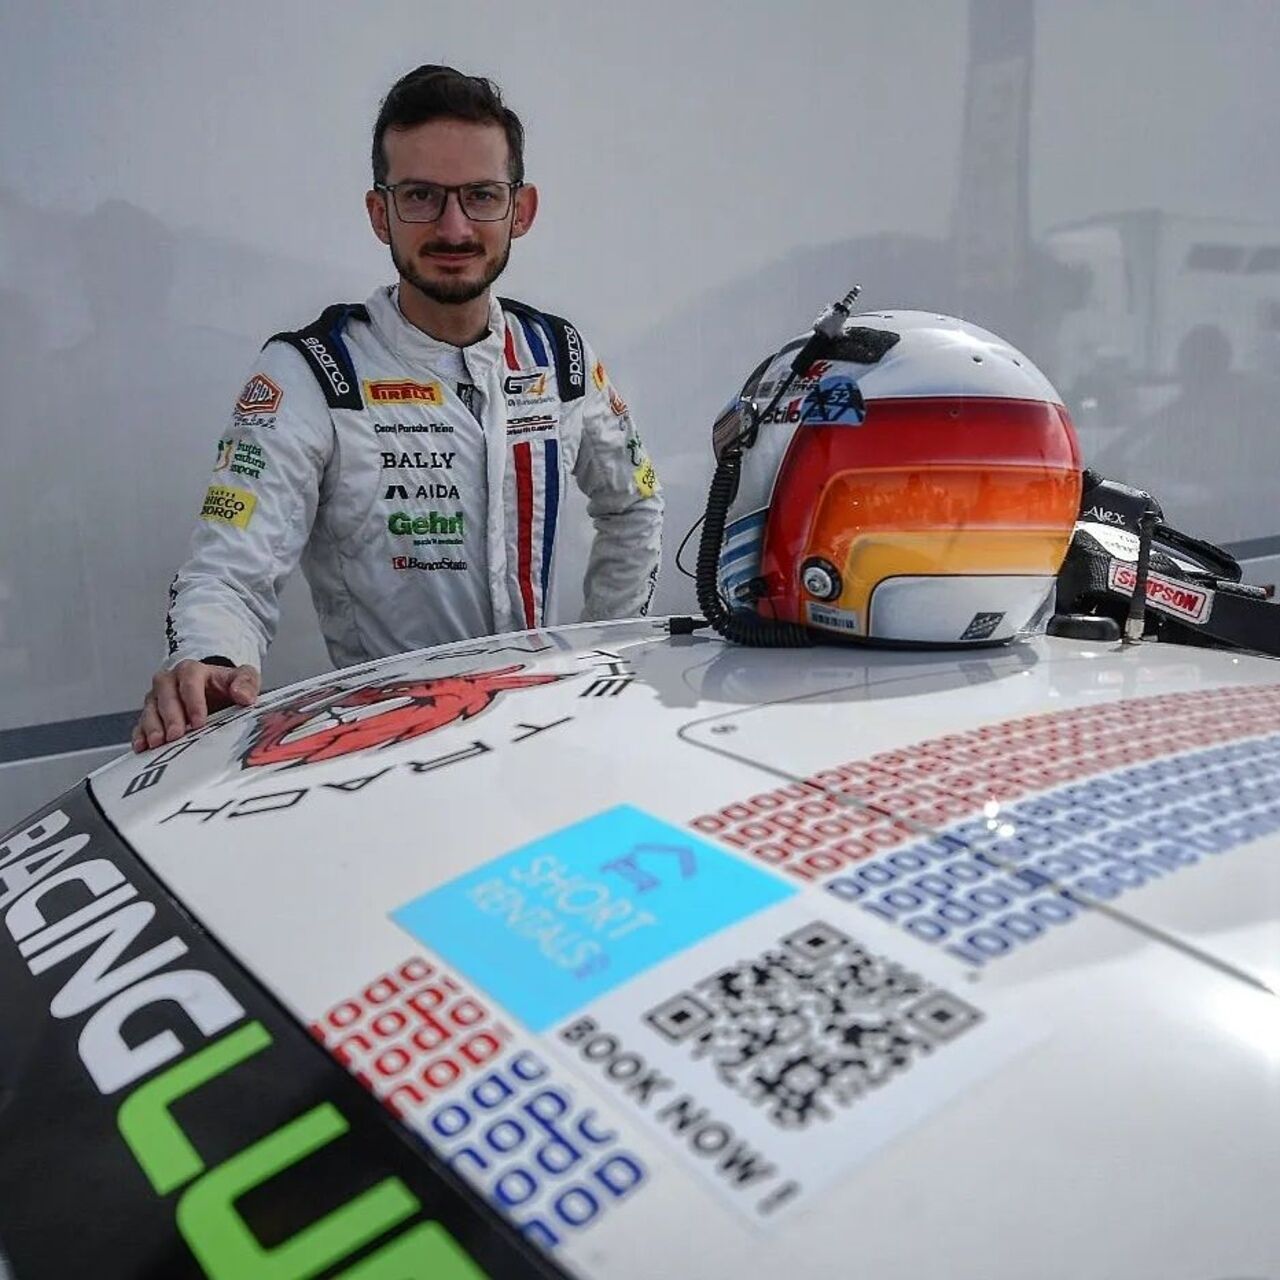 الکس فونتانا: در مصاحبه با Innovando.News، راننده تیچینو فرآیندهای مجازی سازی و دیجیتالی شدن در مسابقات اتومبیل رانی را بررسی می کند.